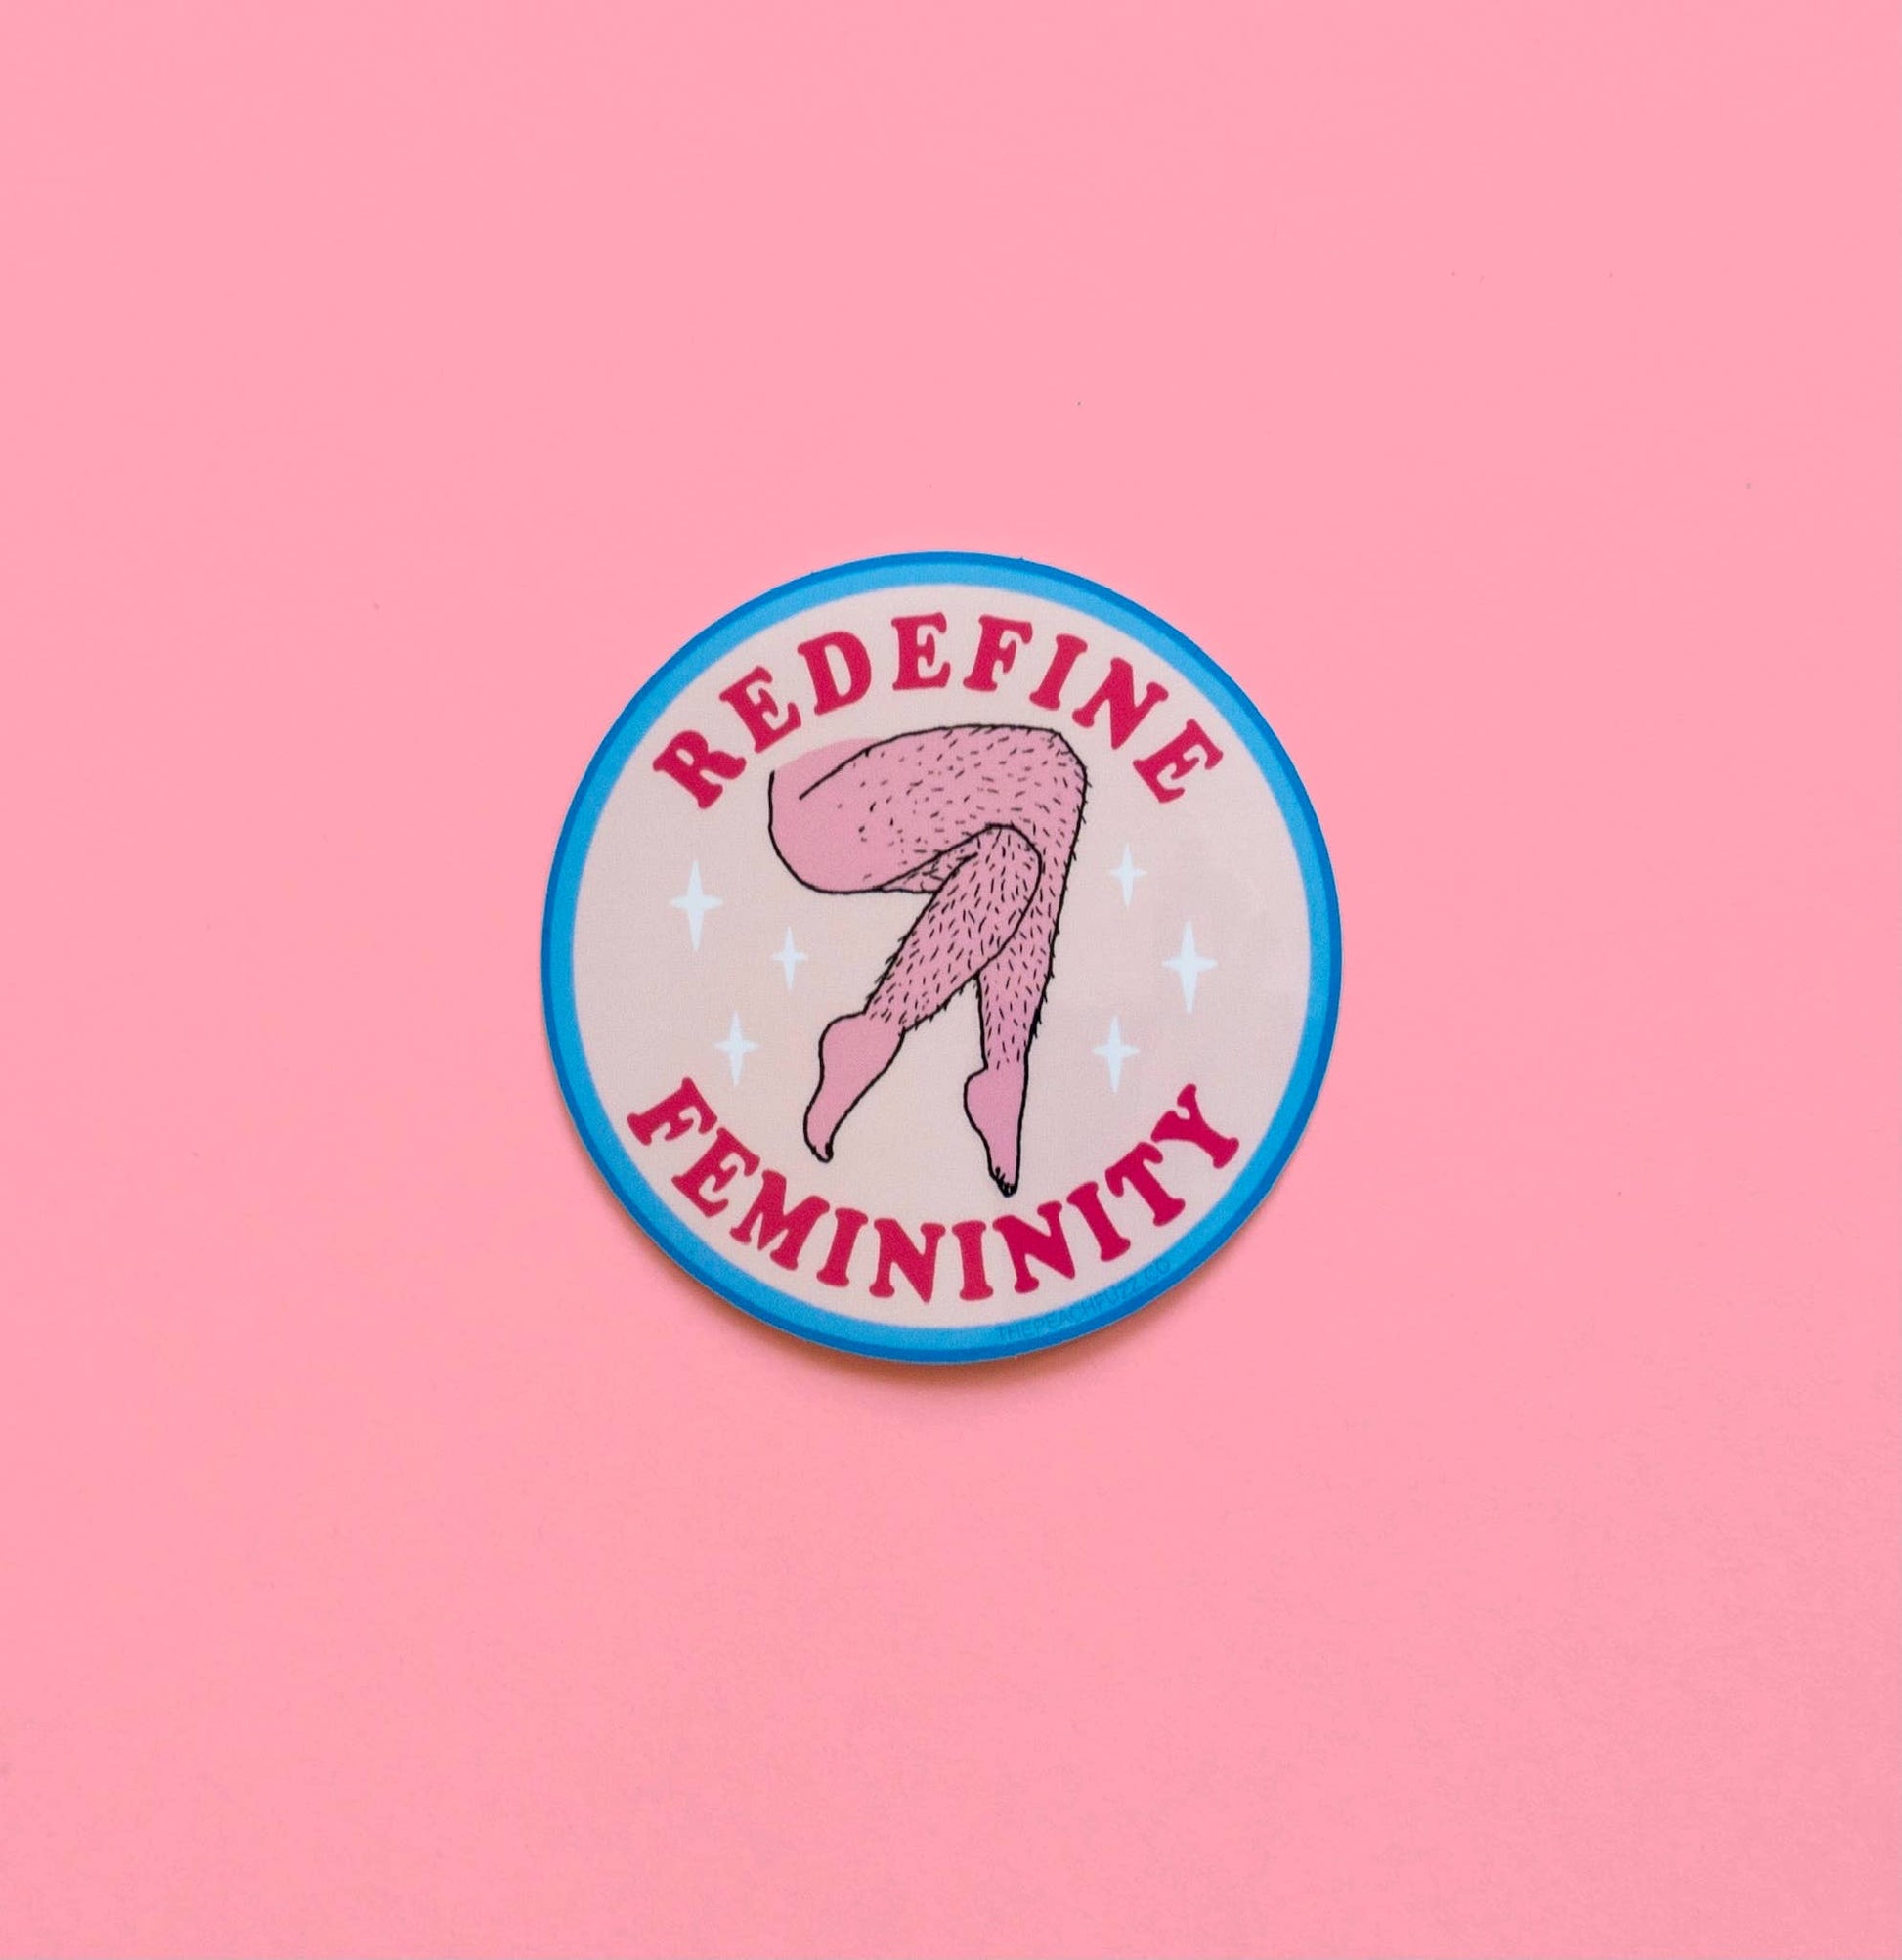 Redefine Femininity Sticker  The Peach Fuzz   